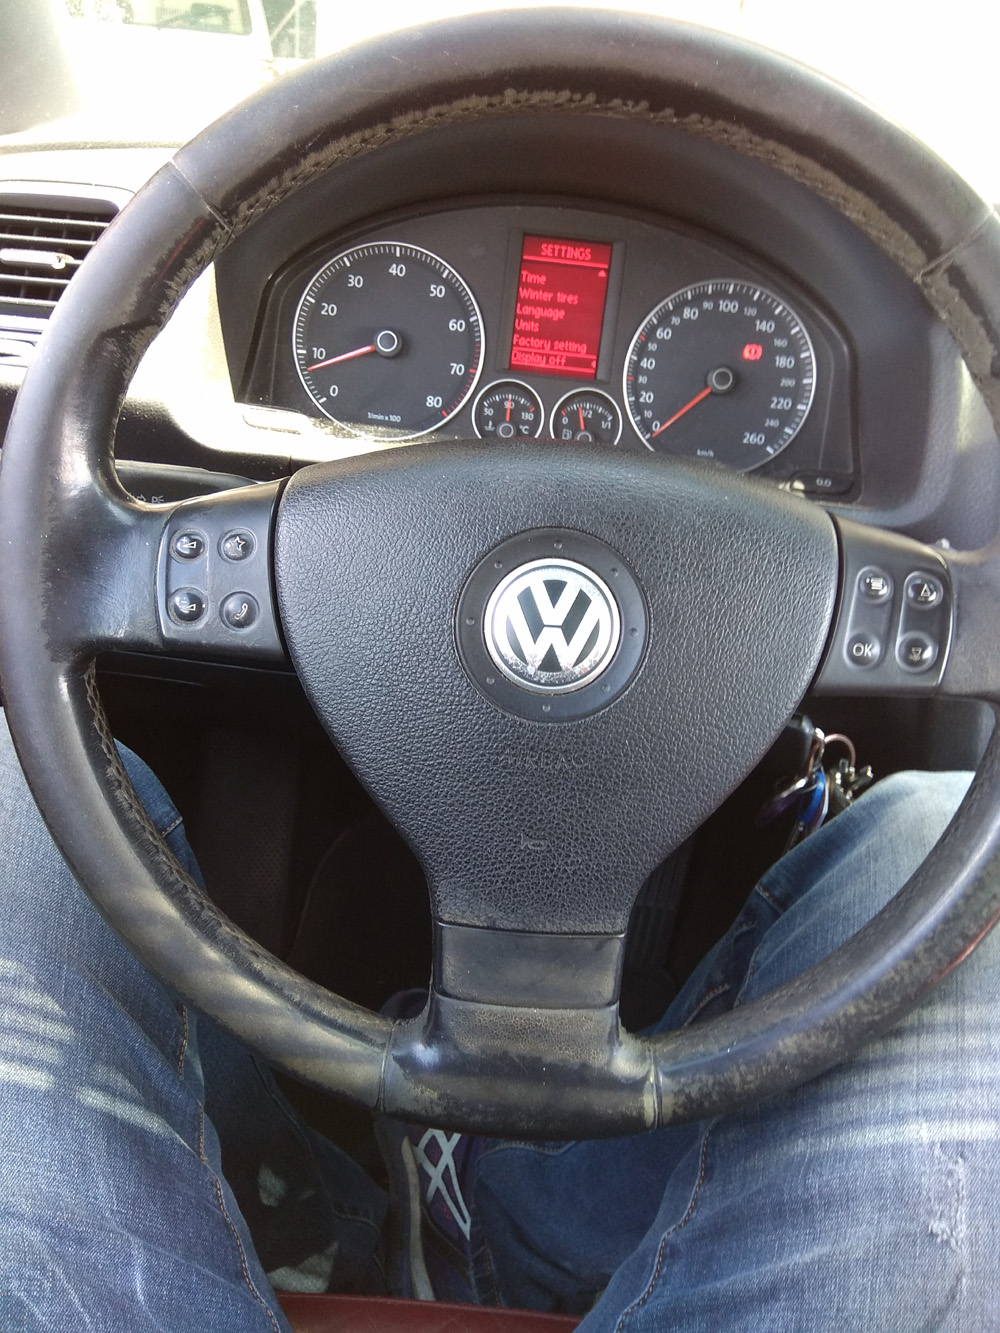 VW eos - 2006